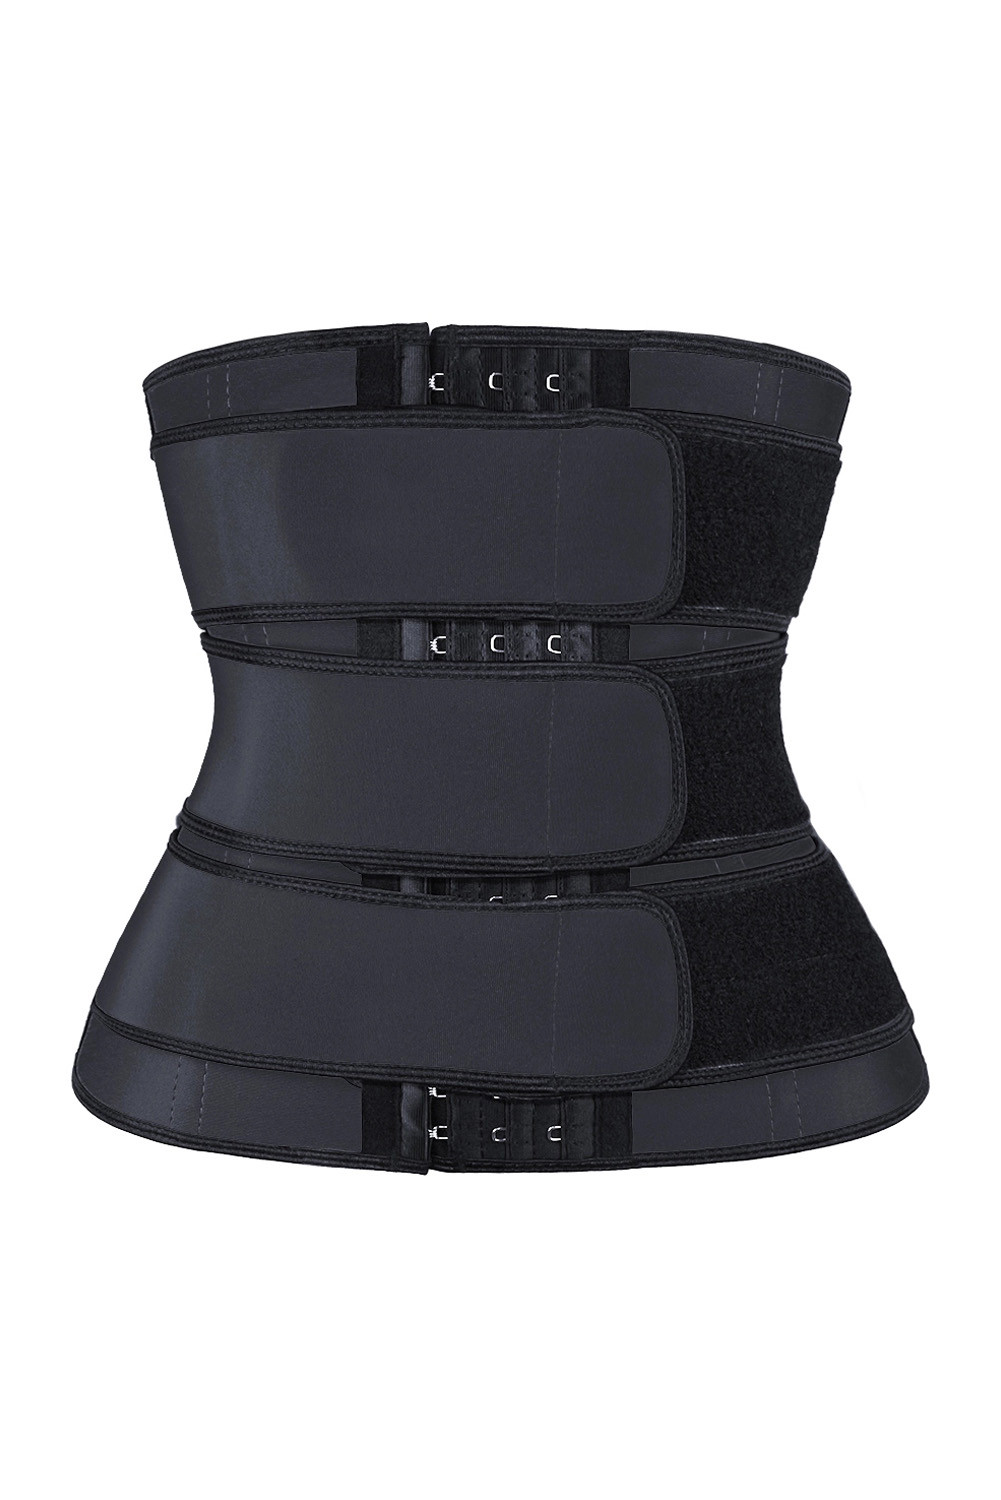 黑色9钢骨腰部训练三排钩设计舒适塑身衣 LC51077